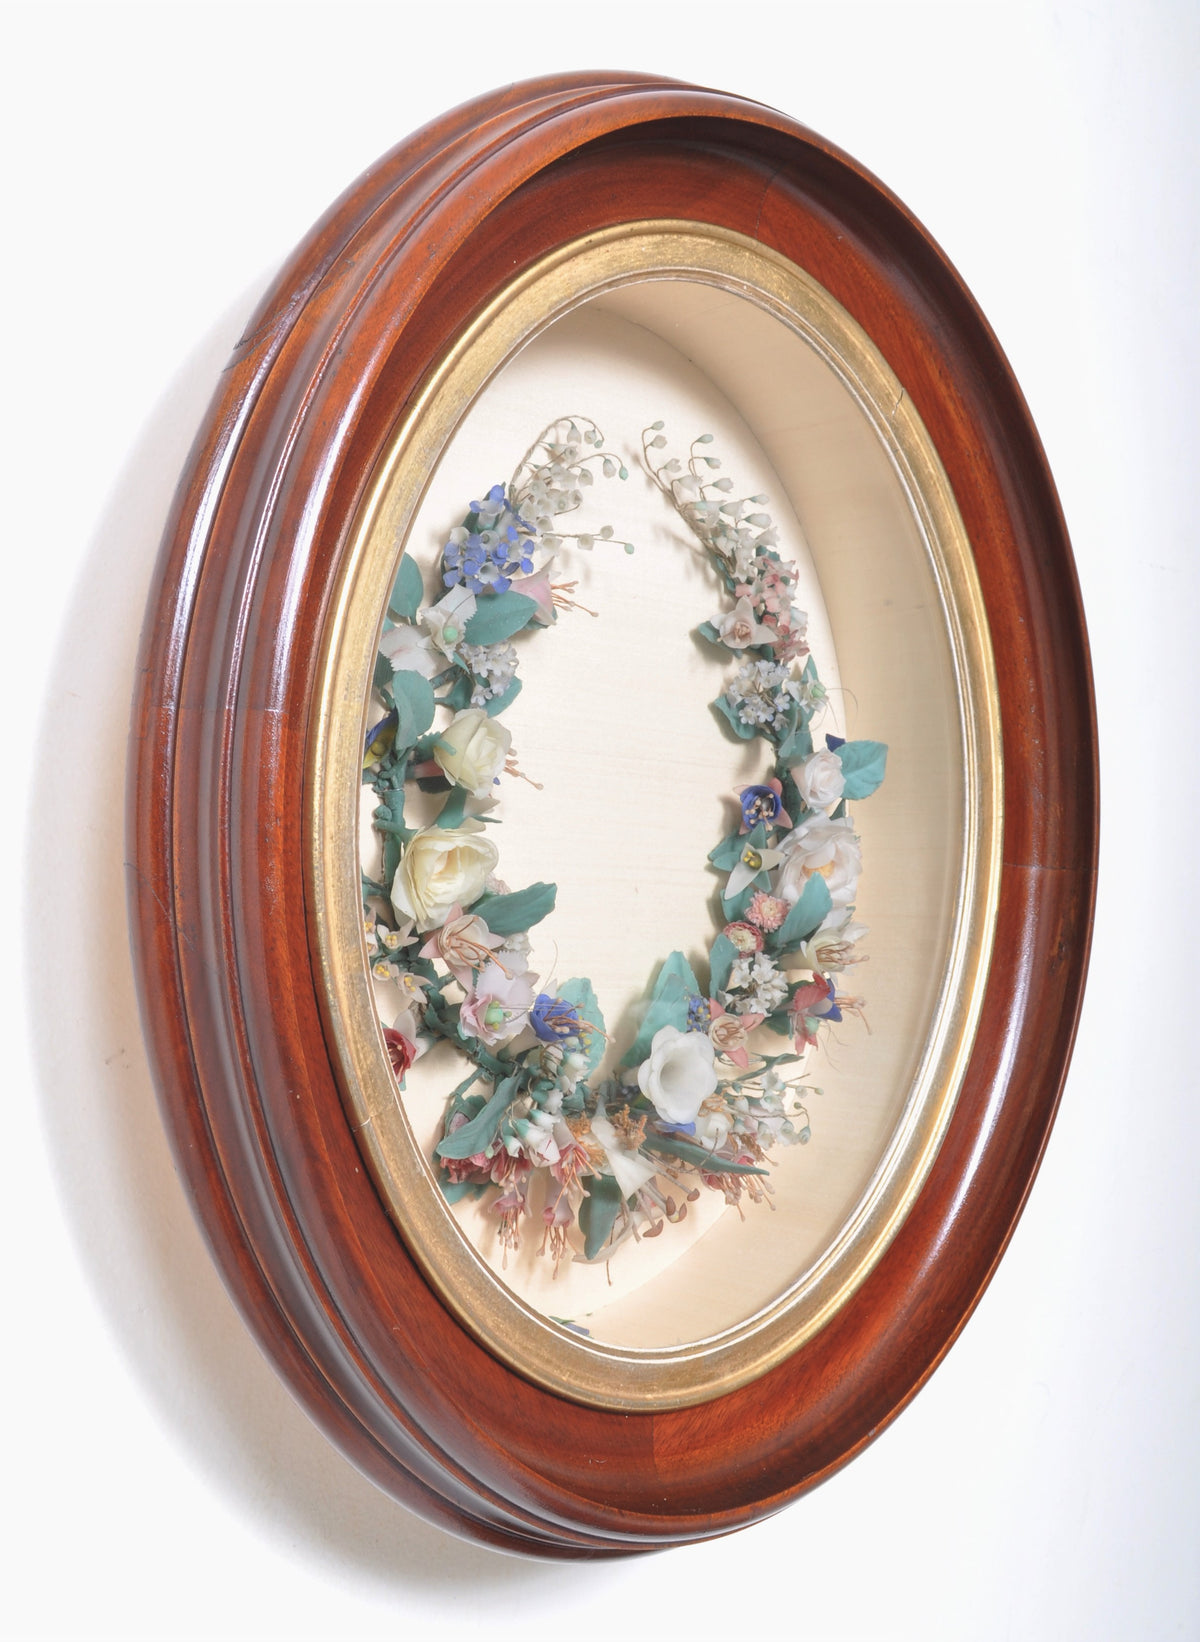 Antique Waxed Floral Wreath Memento Mori in Mahogany Frame, Circa 1860